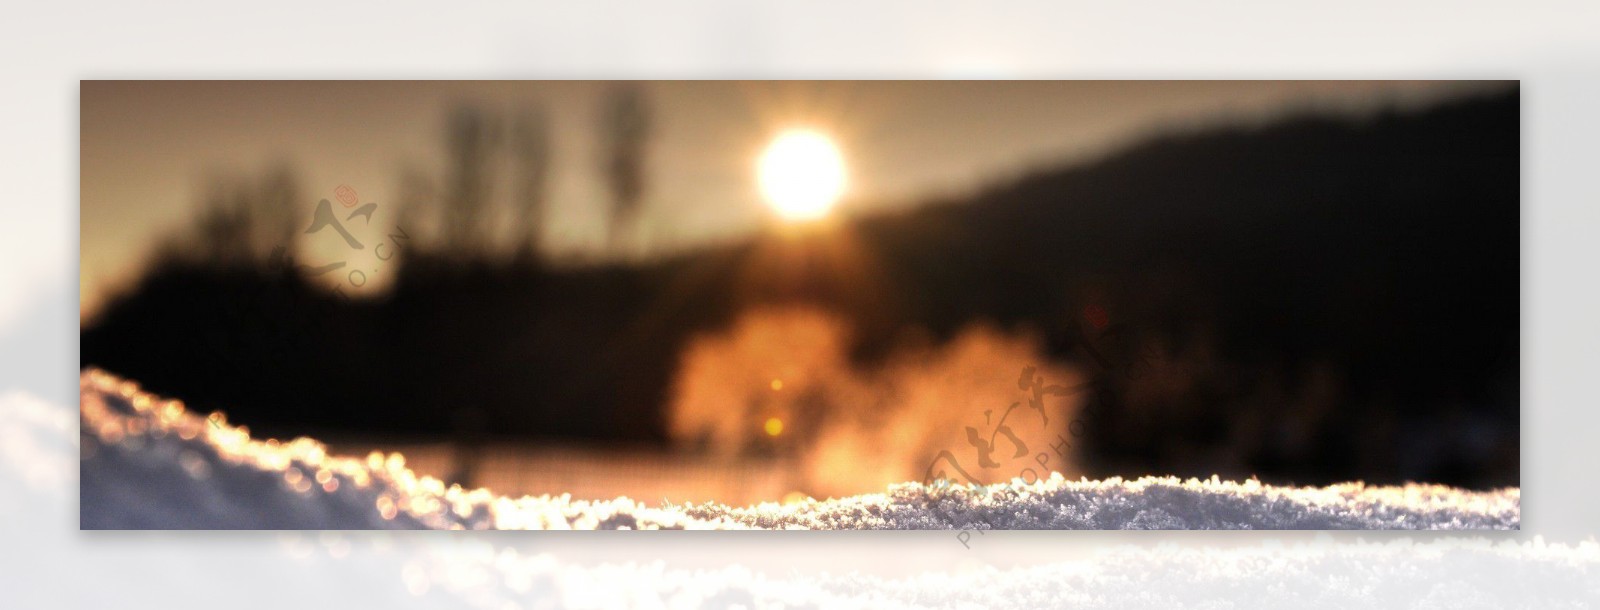 阳光下的雪景背景素材92